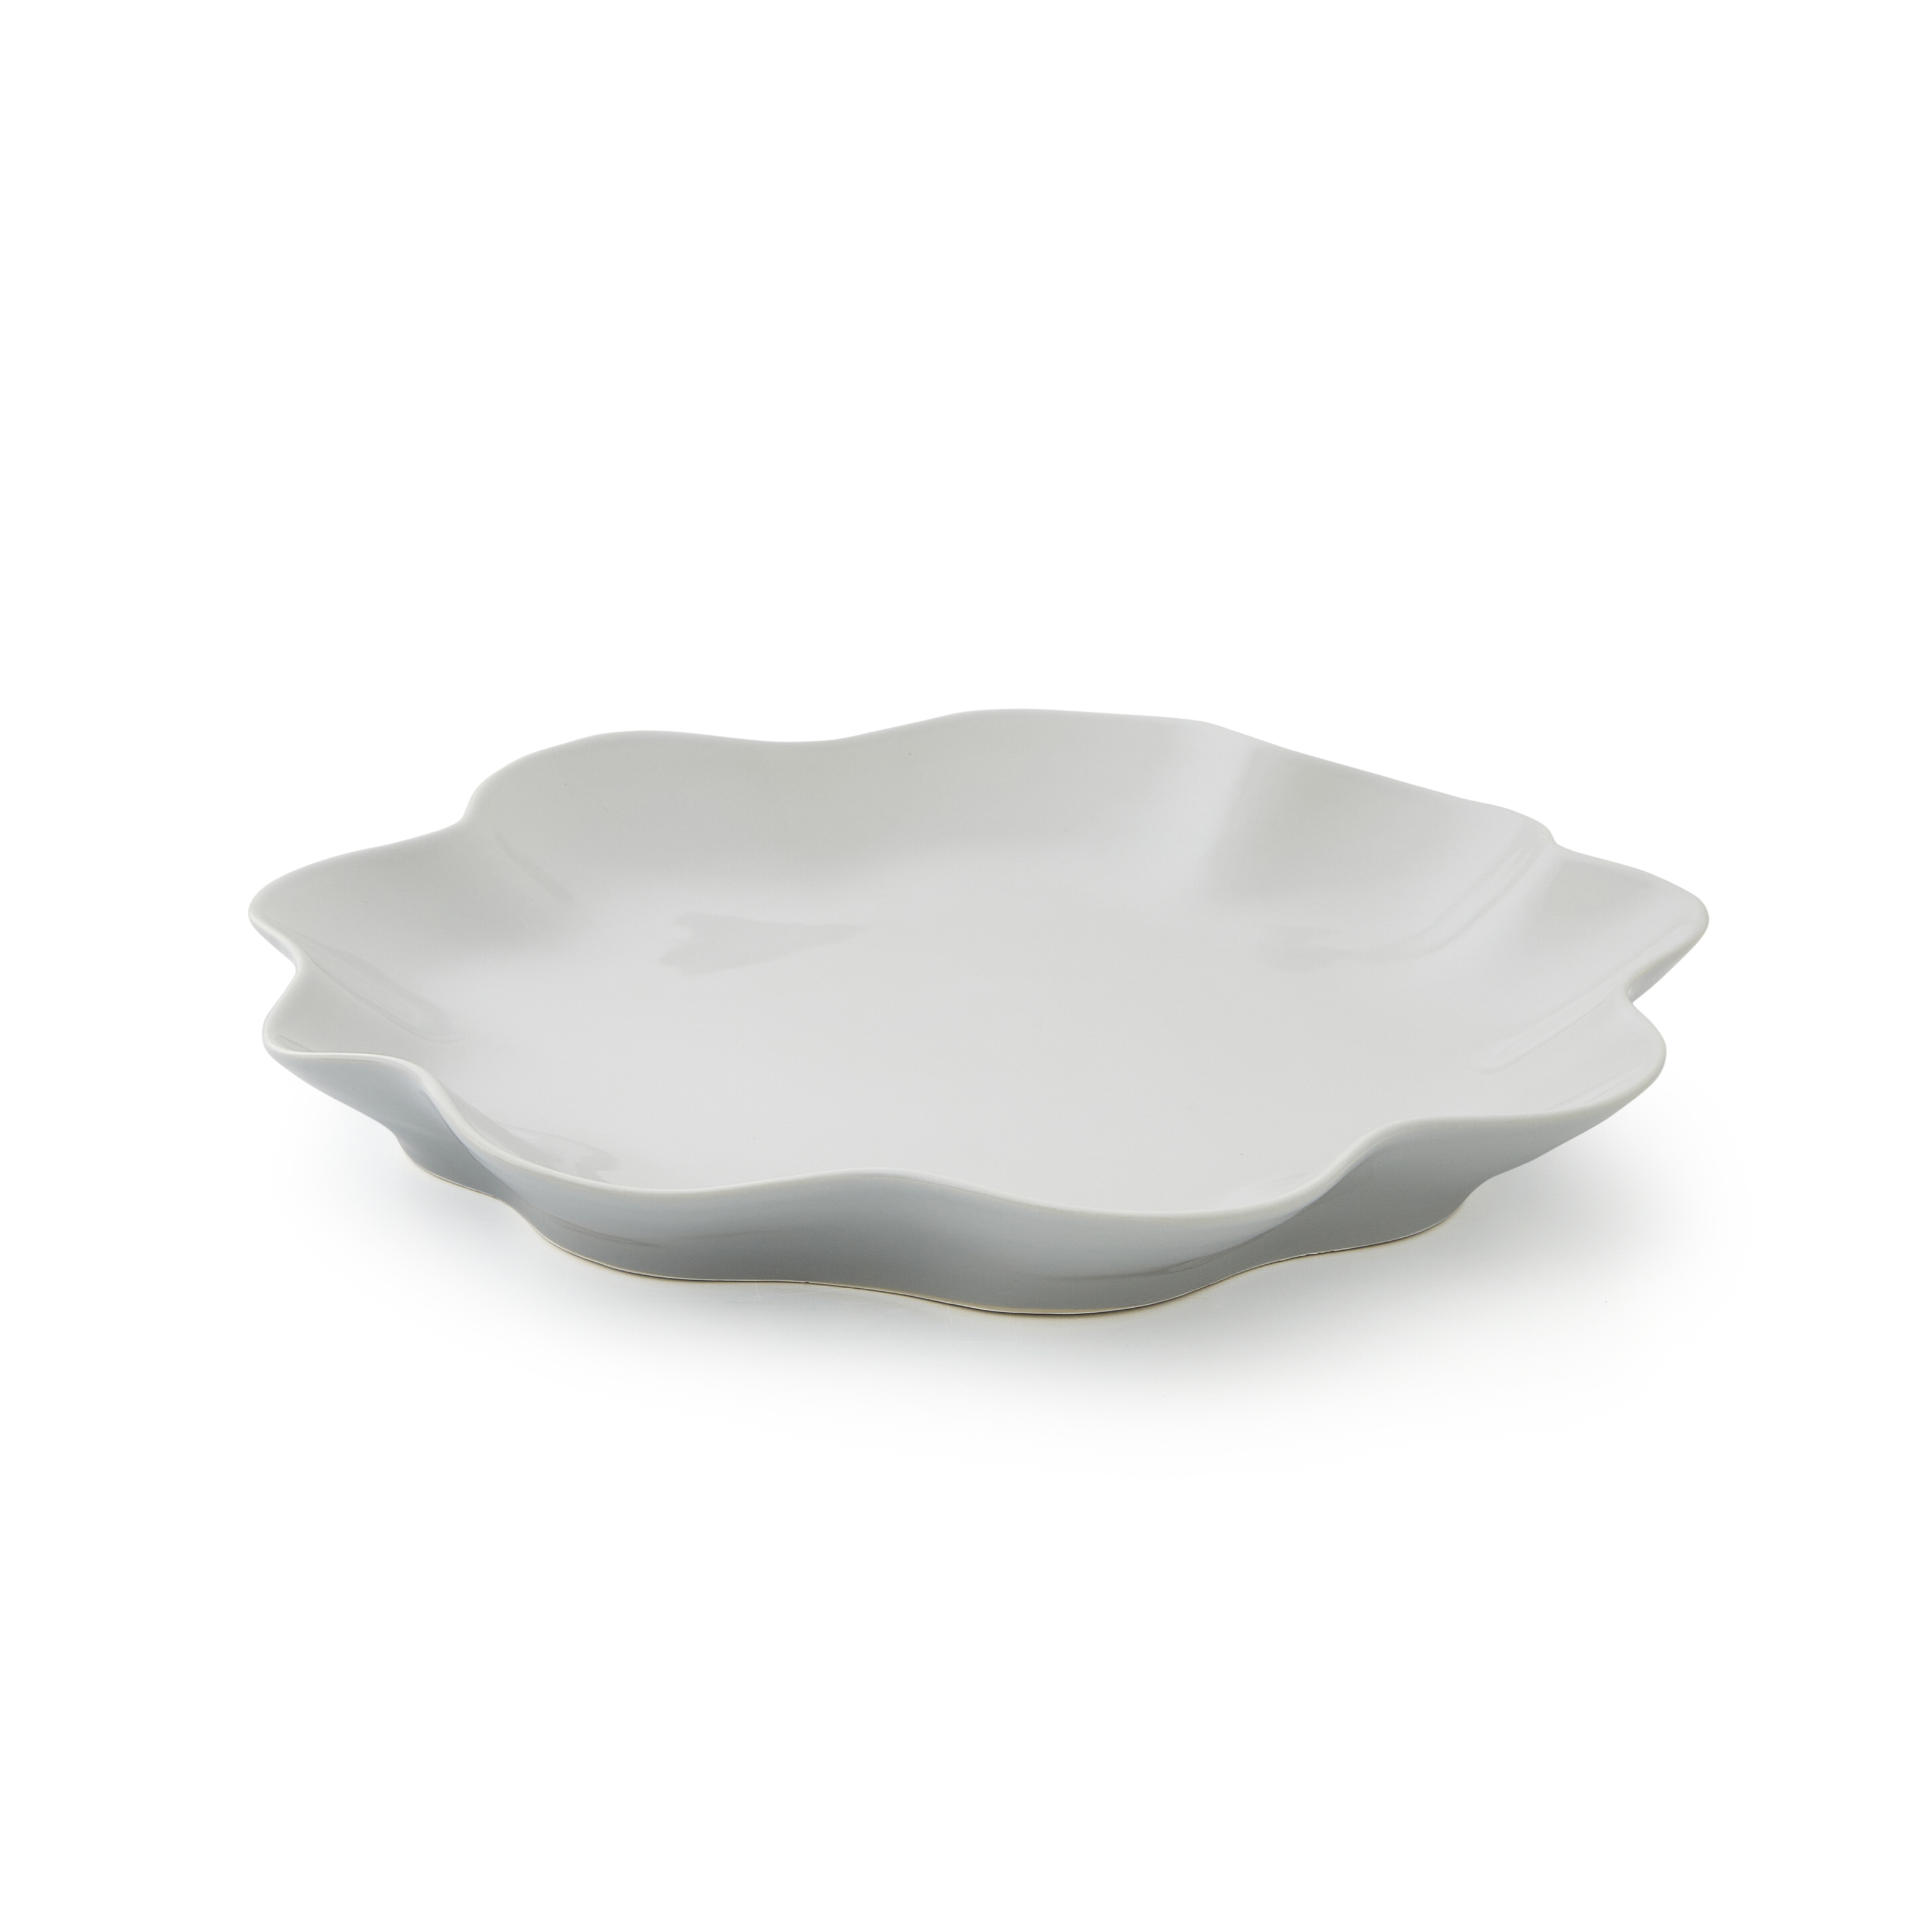 Sophie Conran Floret Large Serving Platter- Dove Grey image number null